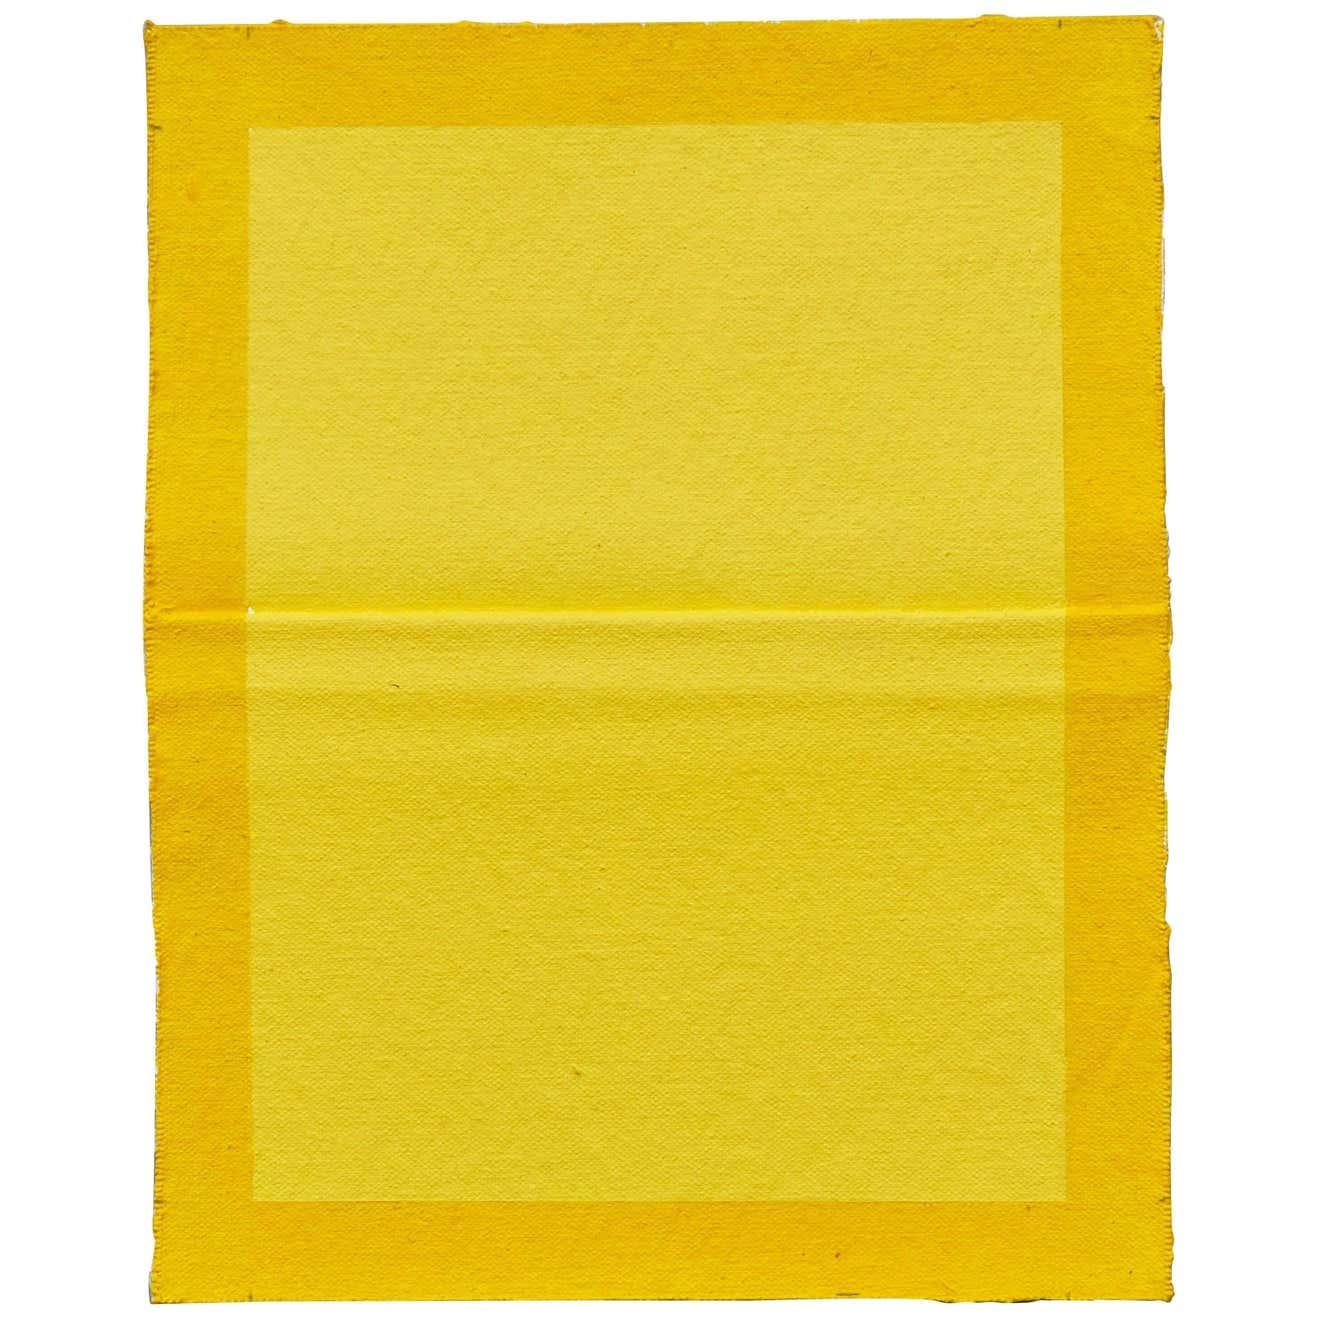 Ángela de la Cruz Pinch Yellow Contemporary Artwork, 2015 For Sale 1